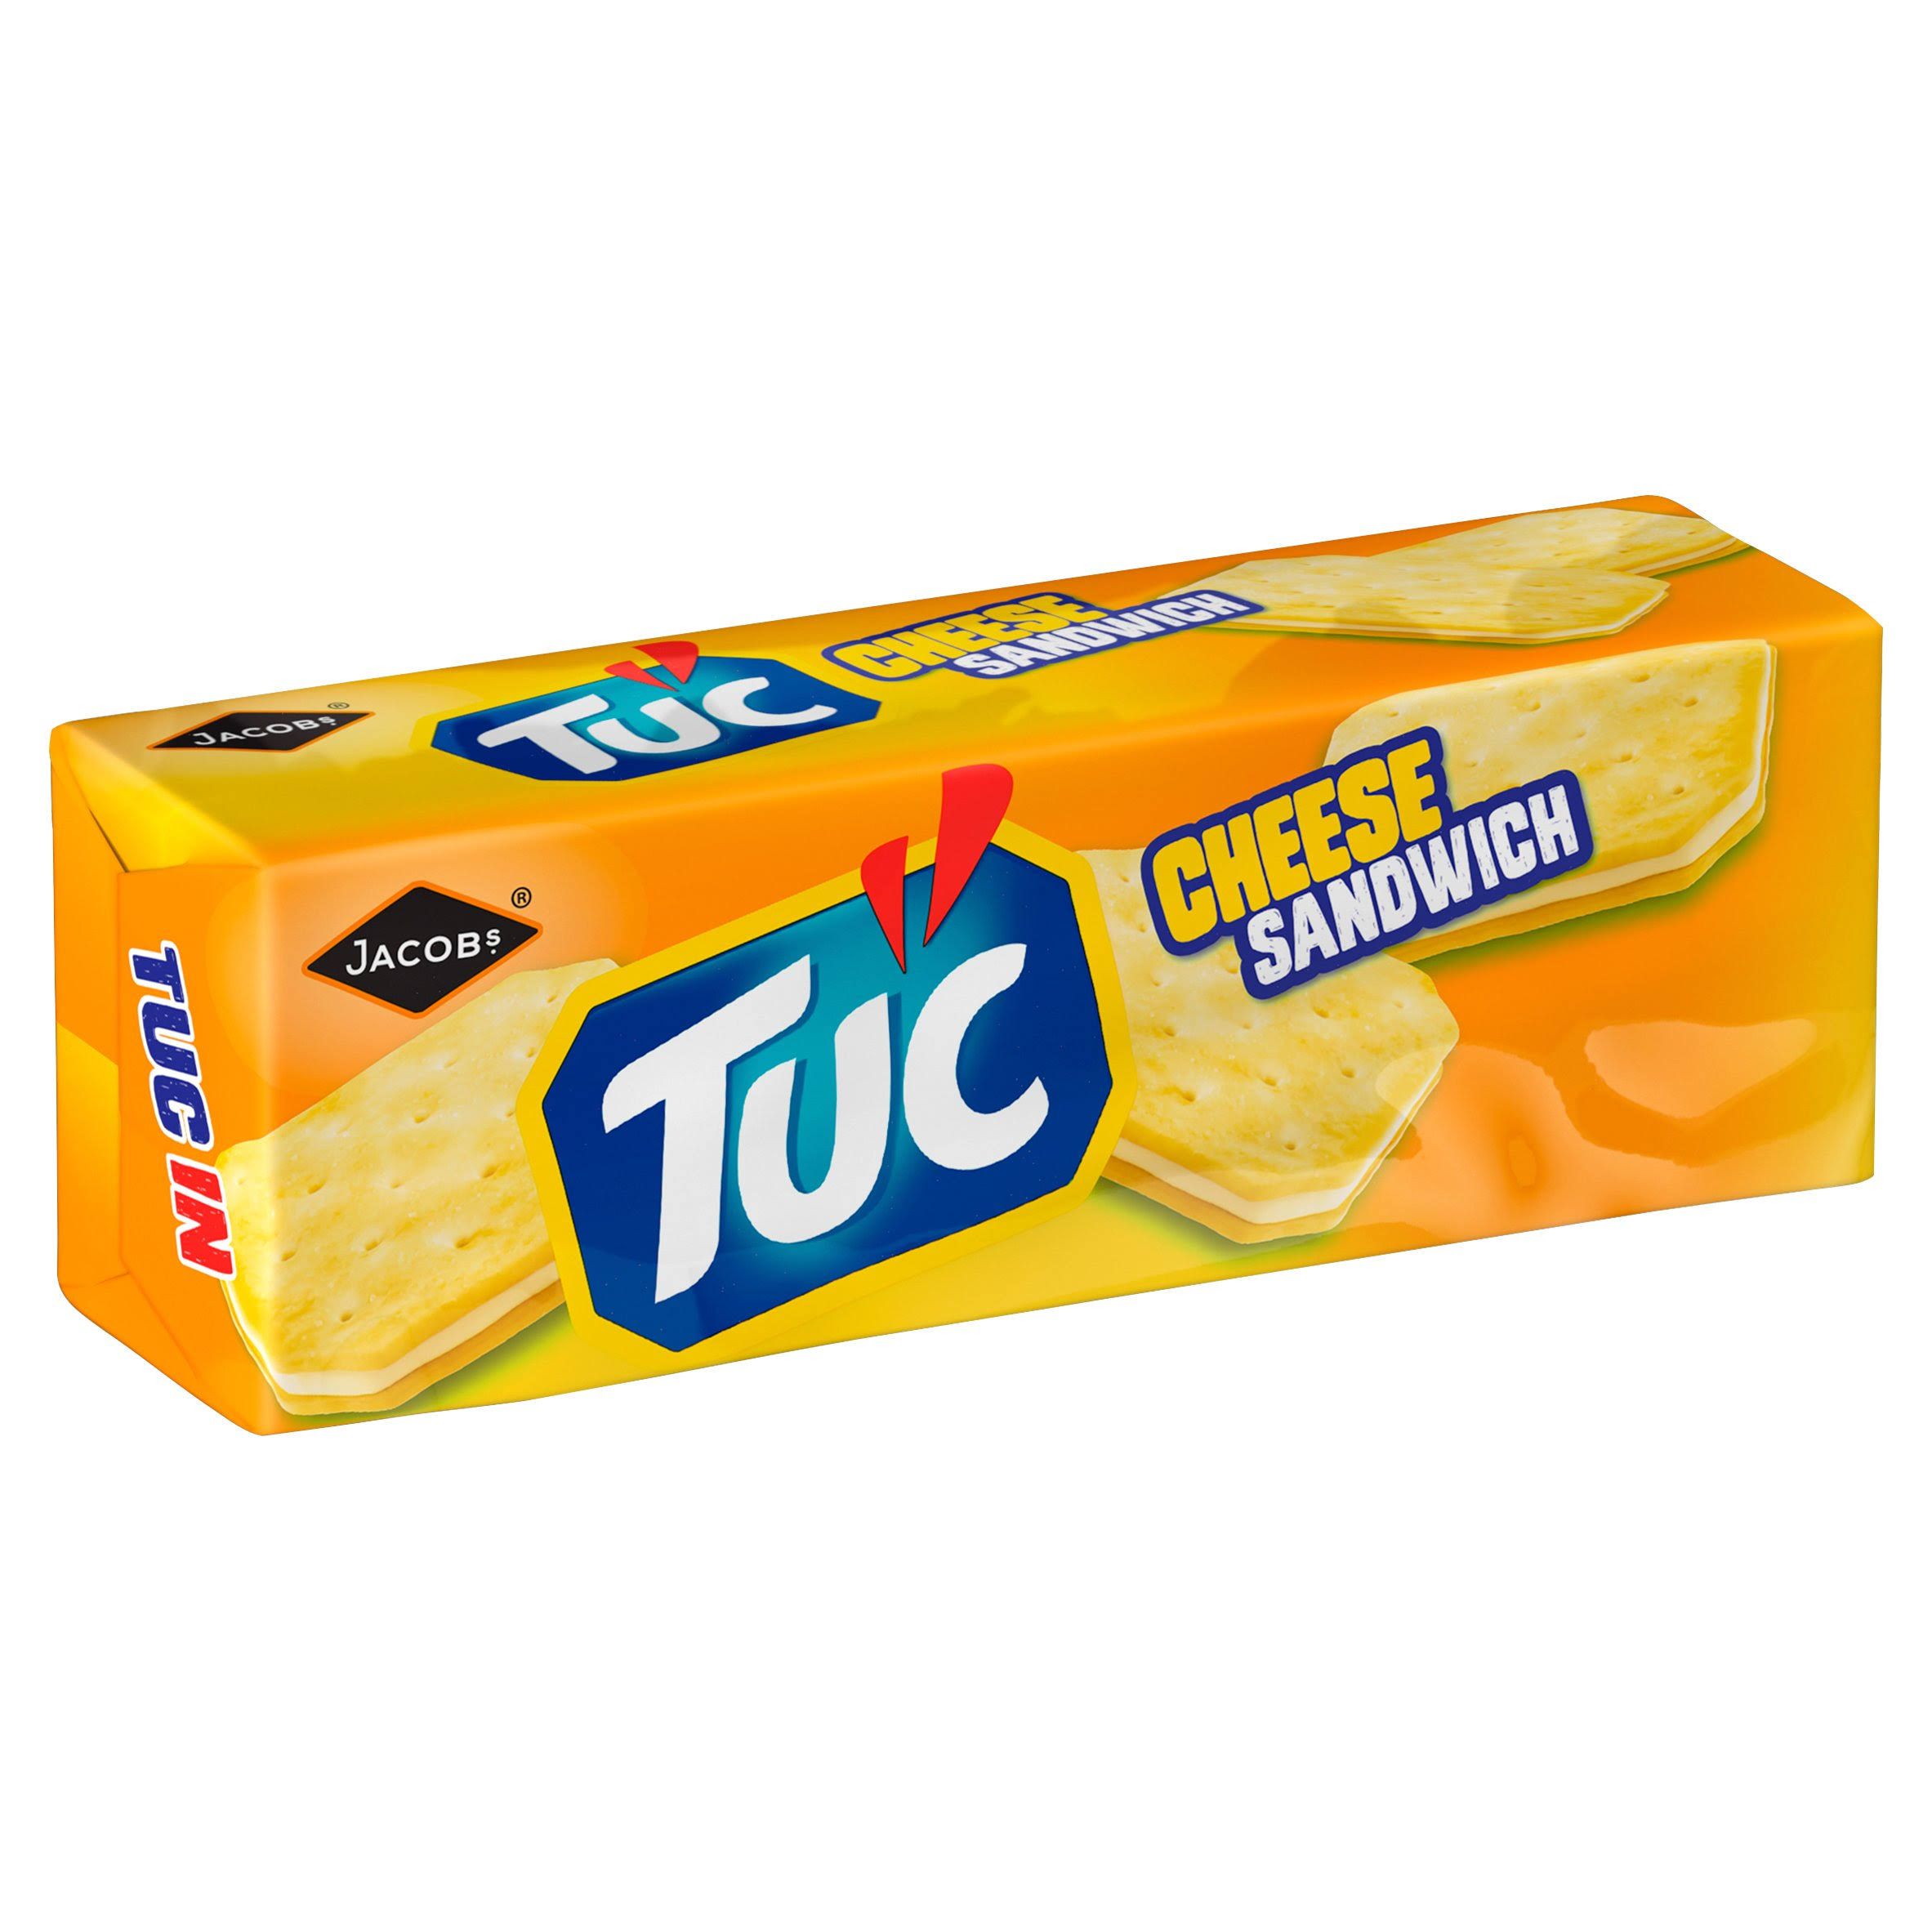 TUC Cheese Sandwich 150g